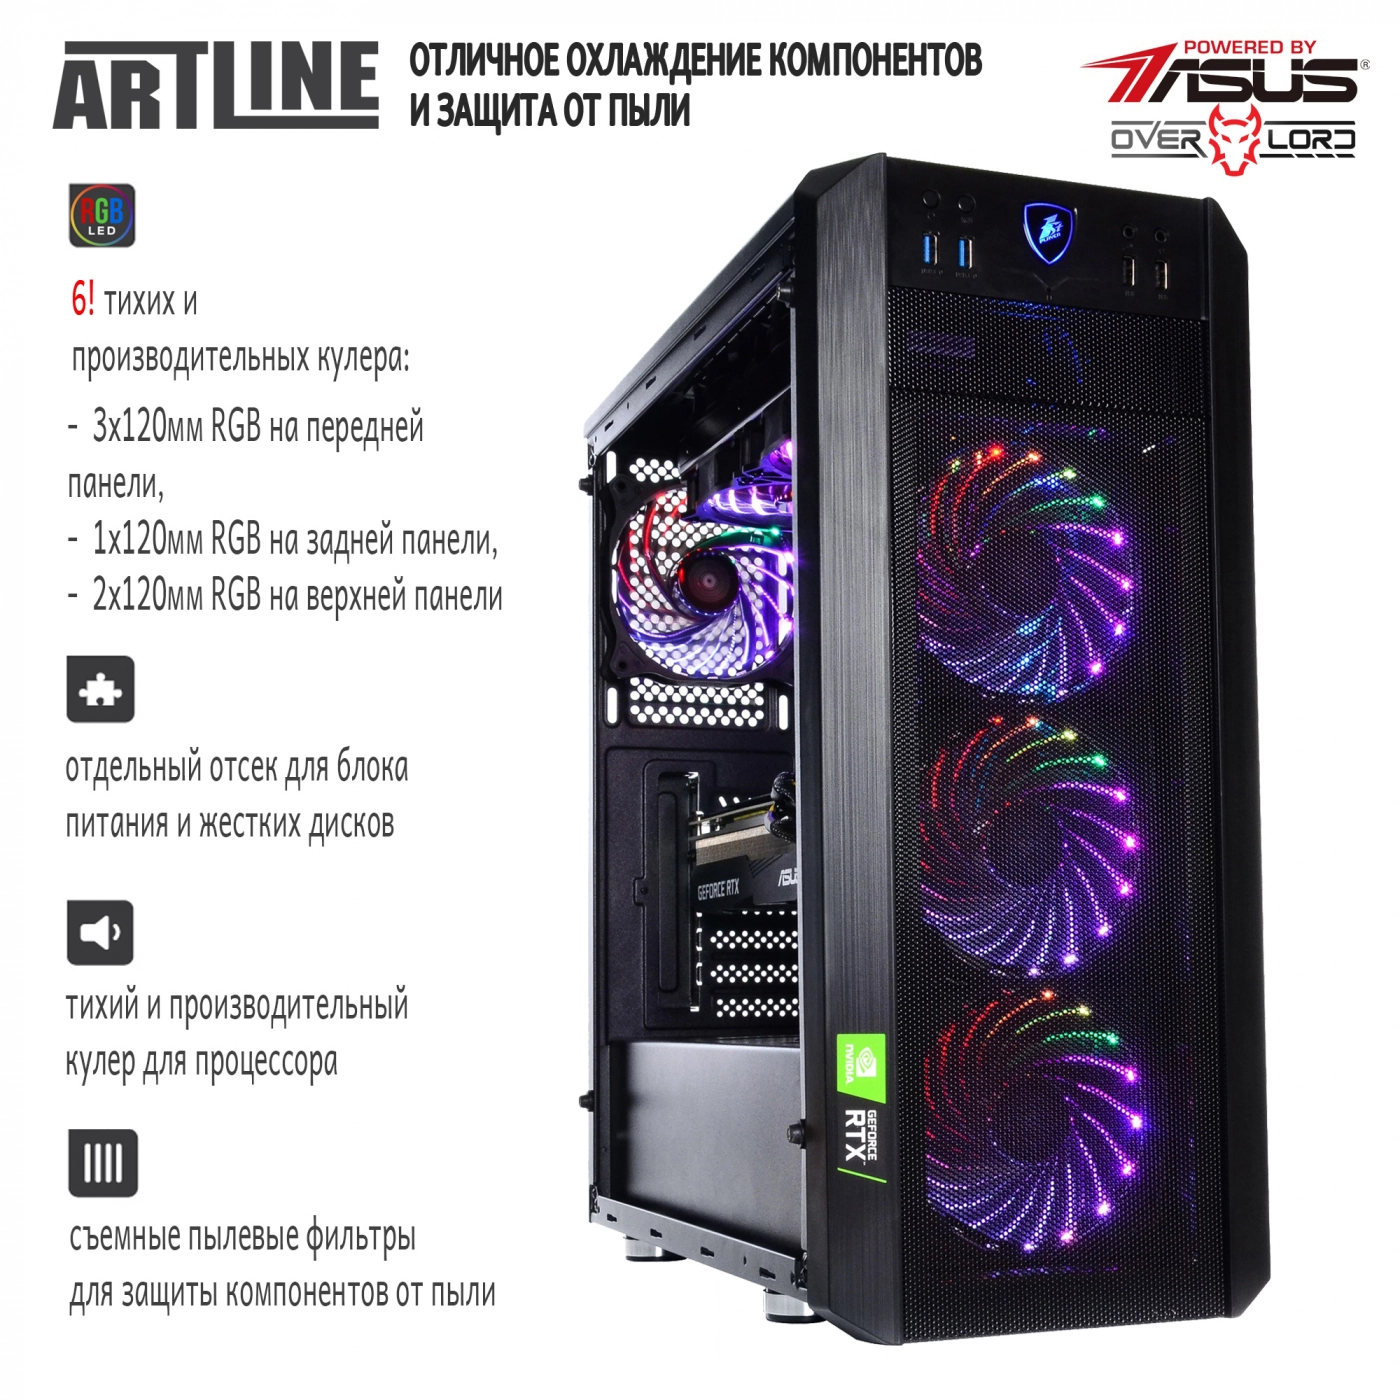 Купить Компьютер ARTLINE Gaming X88v05 - фото 4